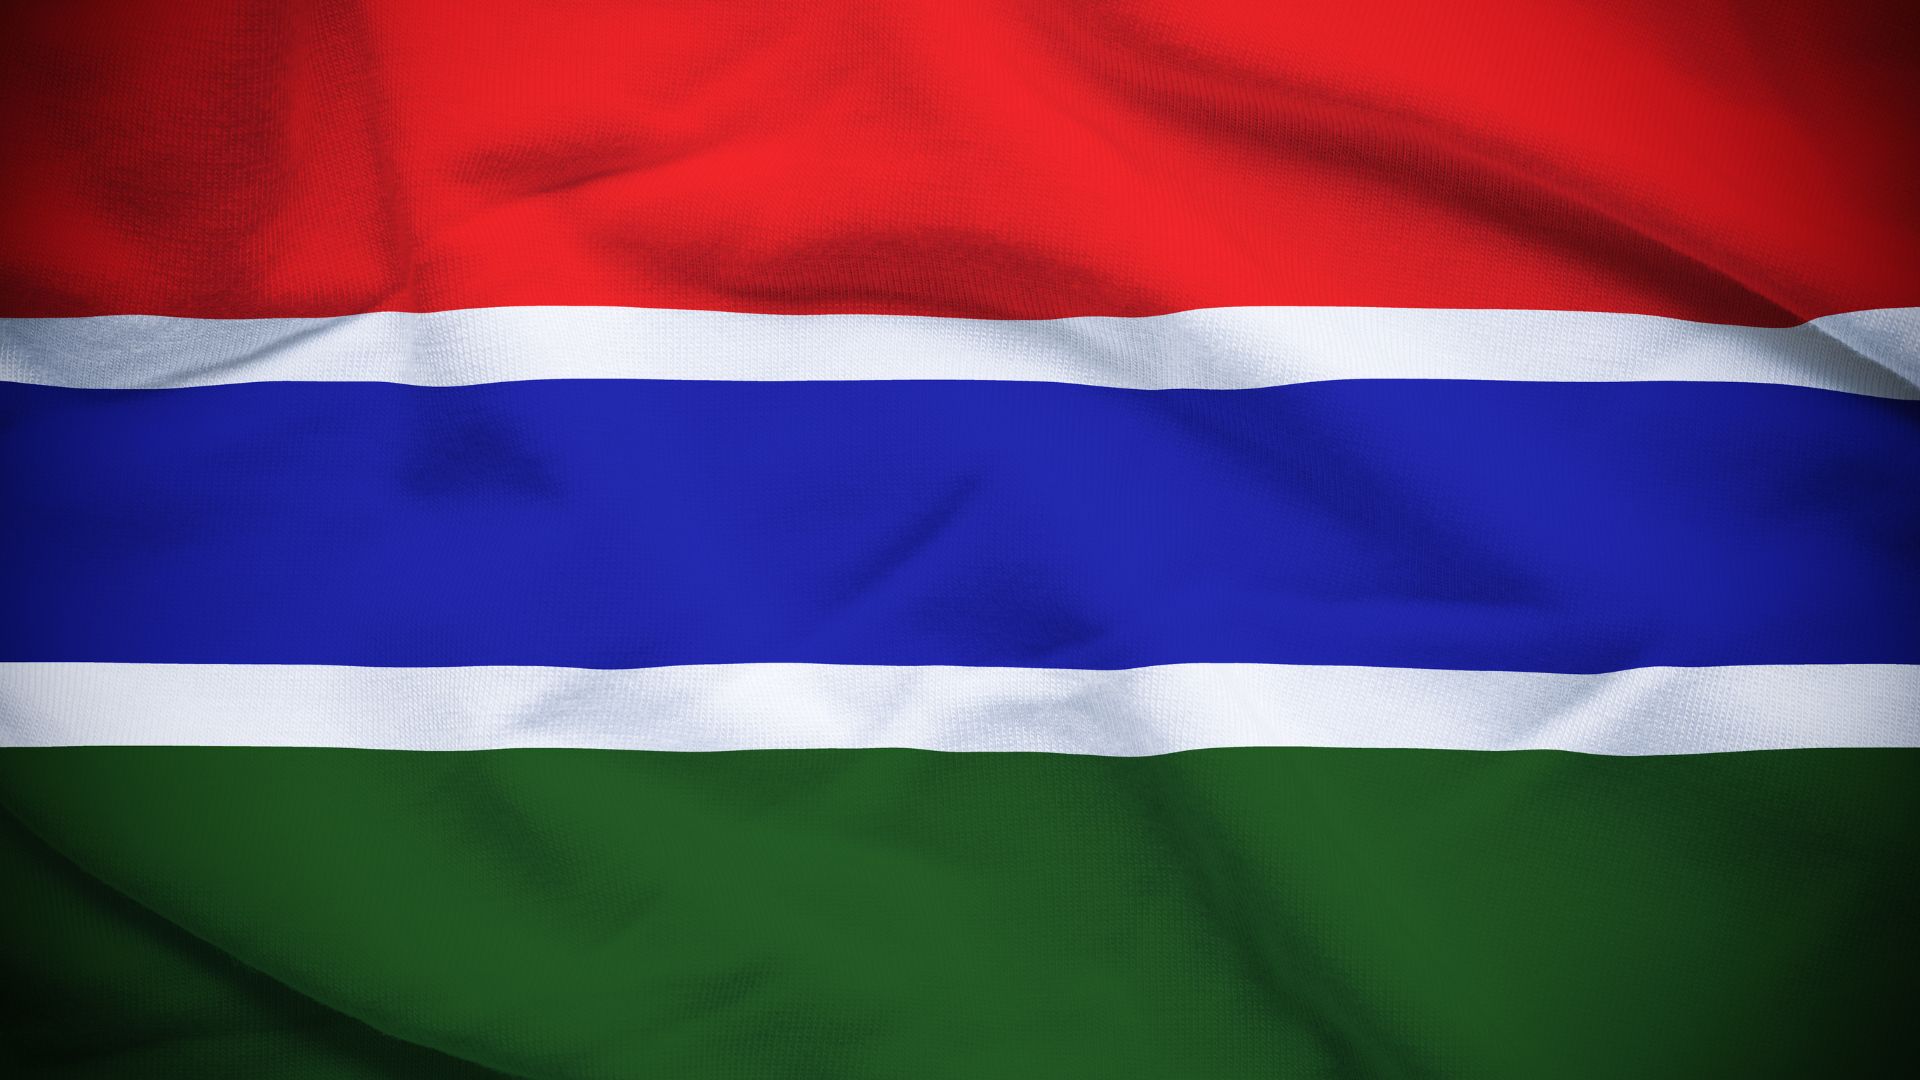 A bandeira consiste em três faixas horizontais nas cores: vermelho, azul e verde. As três faixas estão separadas por duas faixas menores, na cor branca.